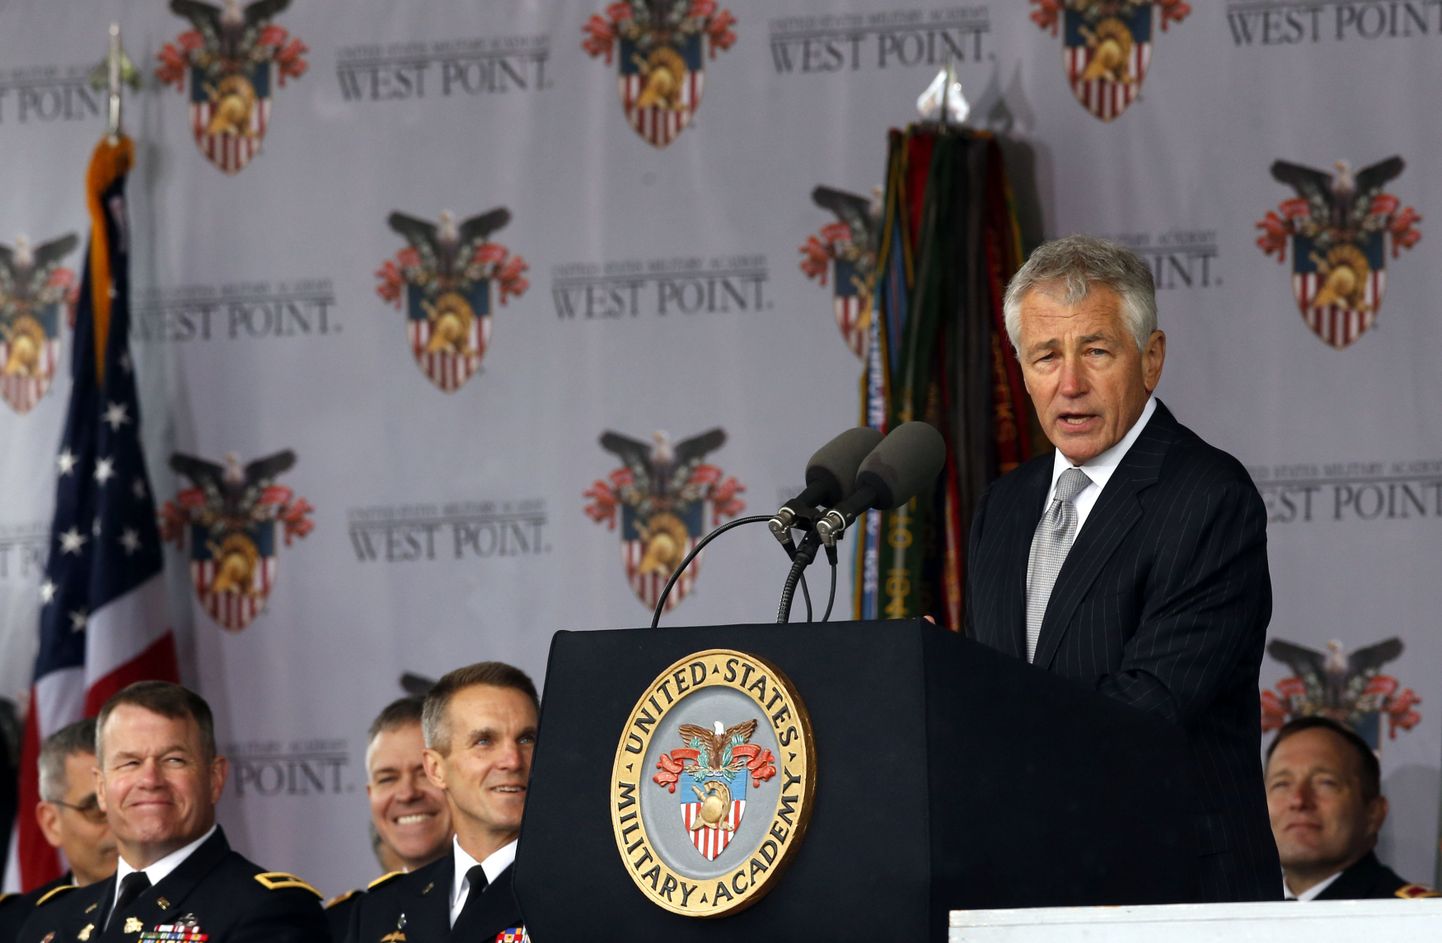 USA kaitseminister Chuck Hagel peab kõnet West Pointi sõjaväeakadeemia lõputseremoonial. Hagel sõitis Singapuri arutama küberjulgeoleku küsimusi.